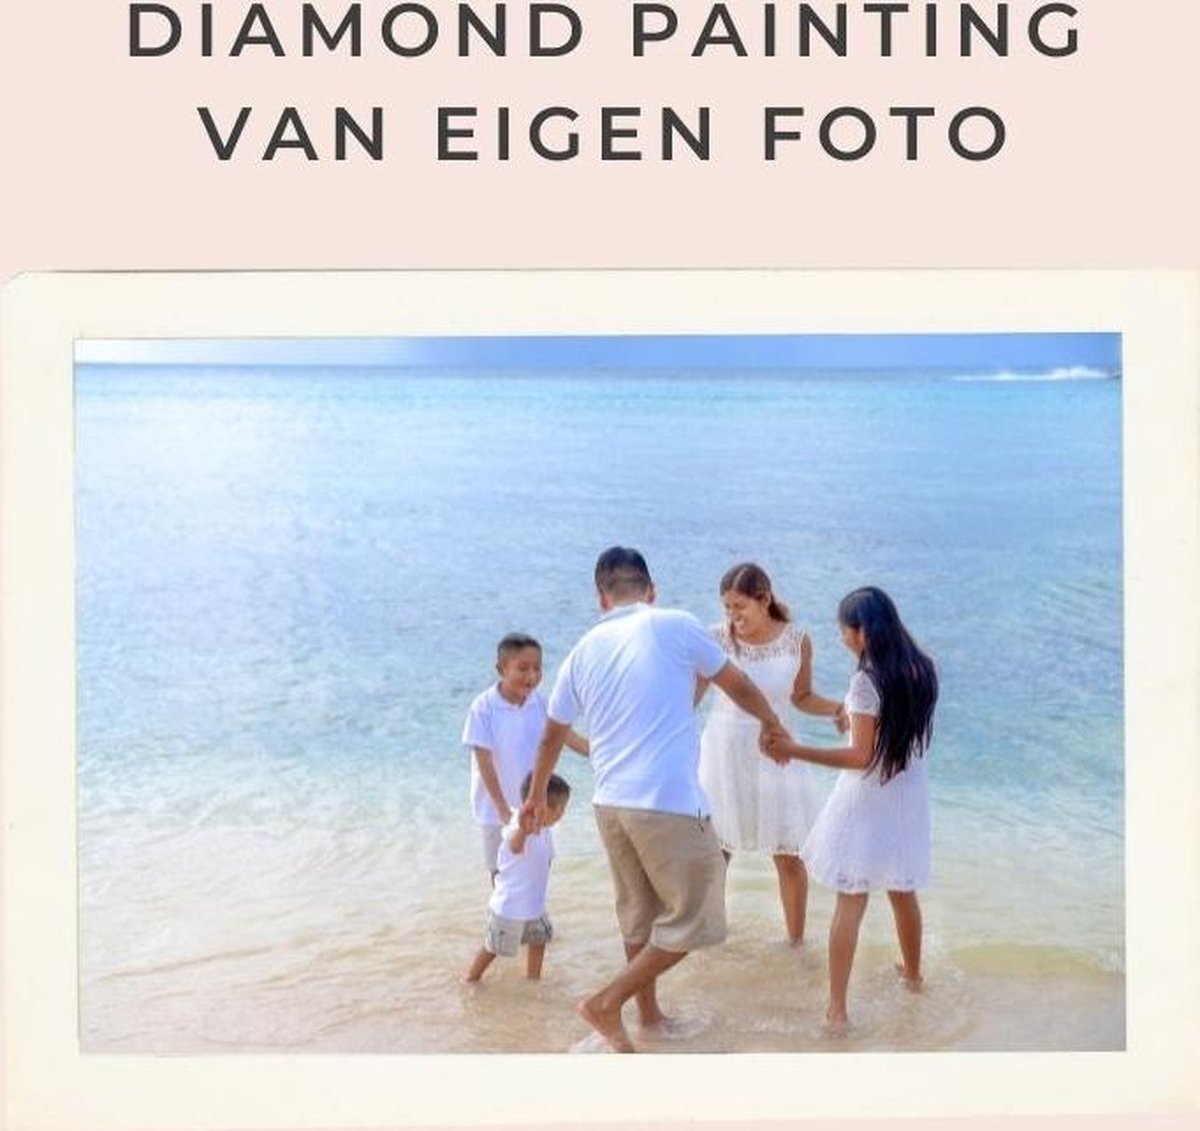 Diamond painting eigen foto - Geproduceerd in Nederland - 30 x 40 cm - dibond materiaal - vierkante steentjes - Binnen 2-3 werkdagen in huis